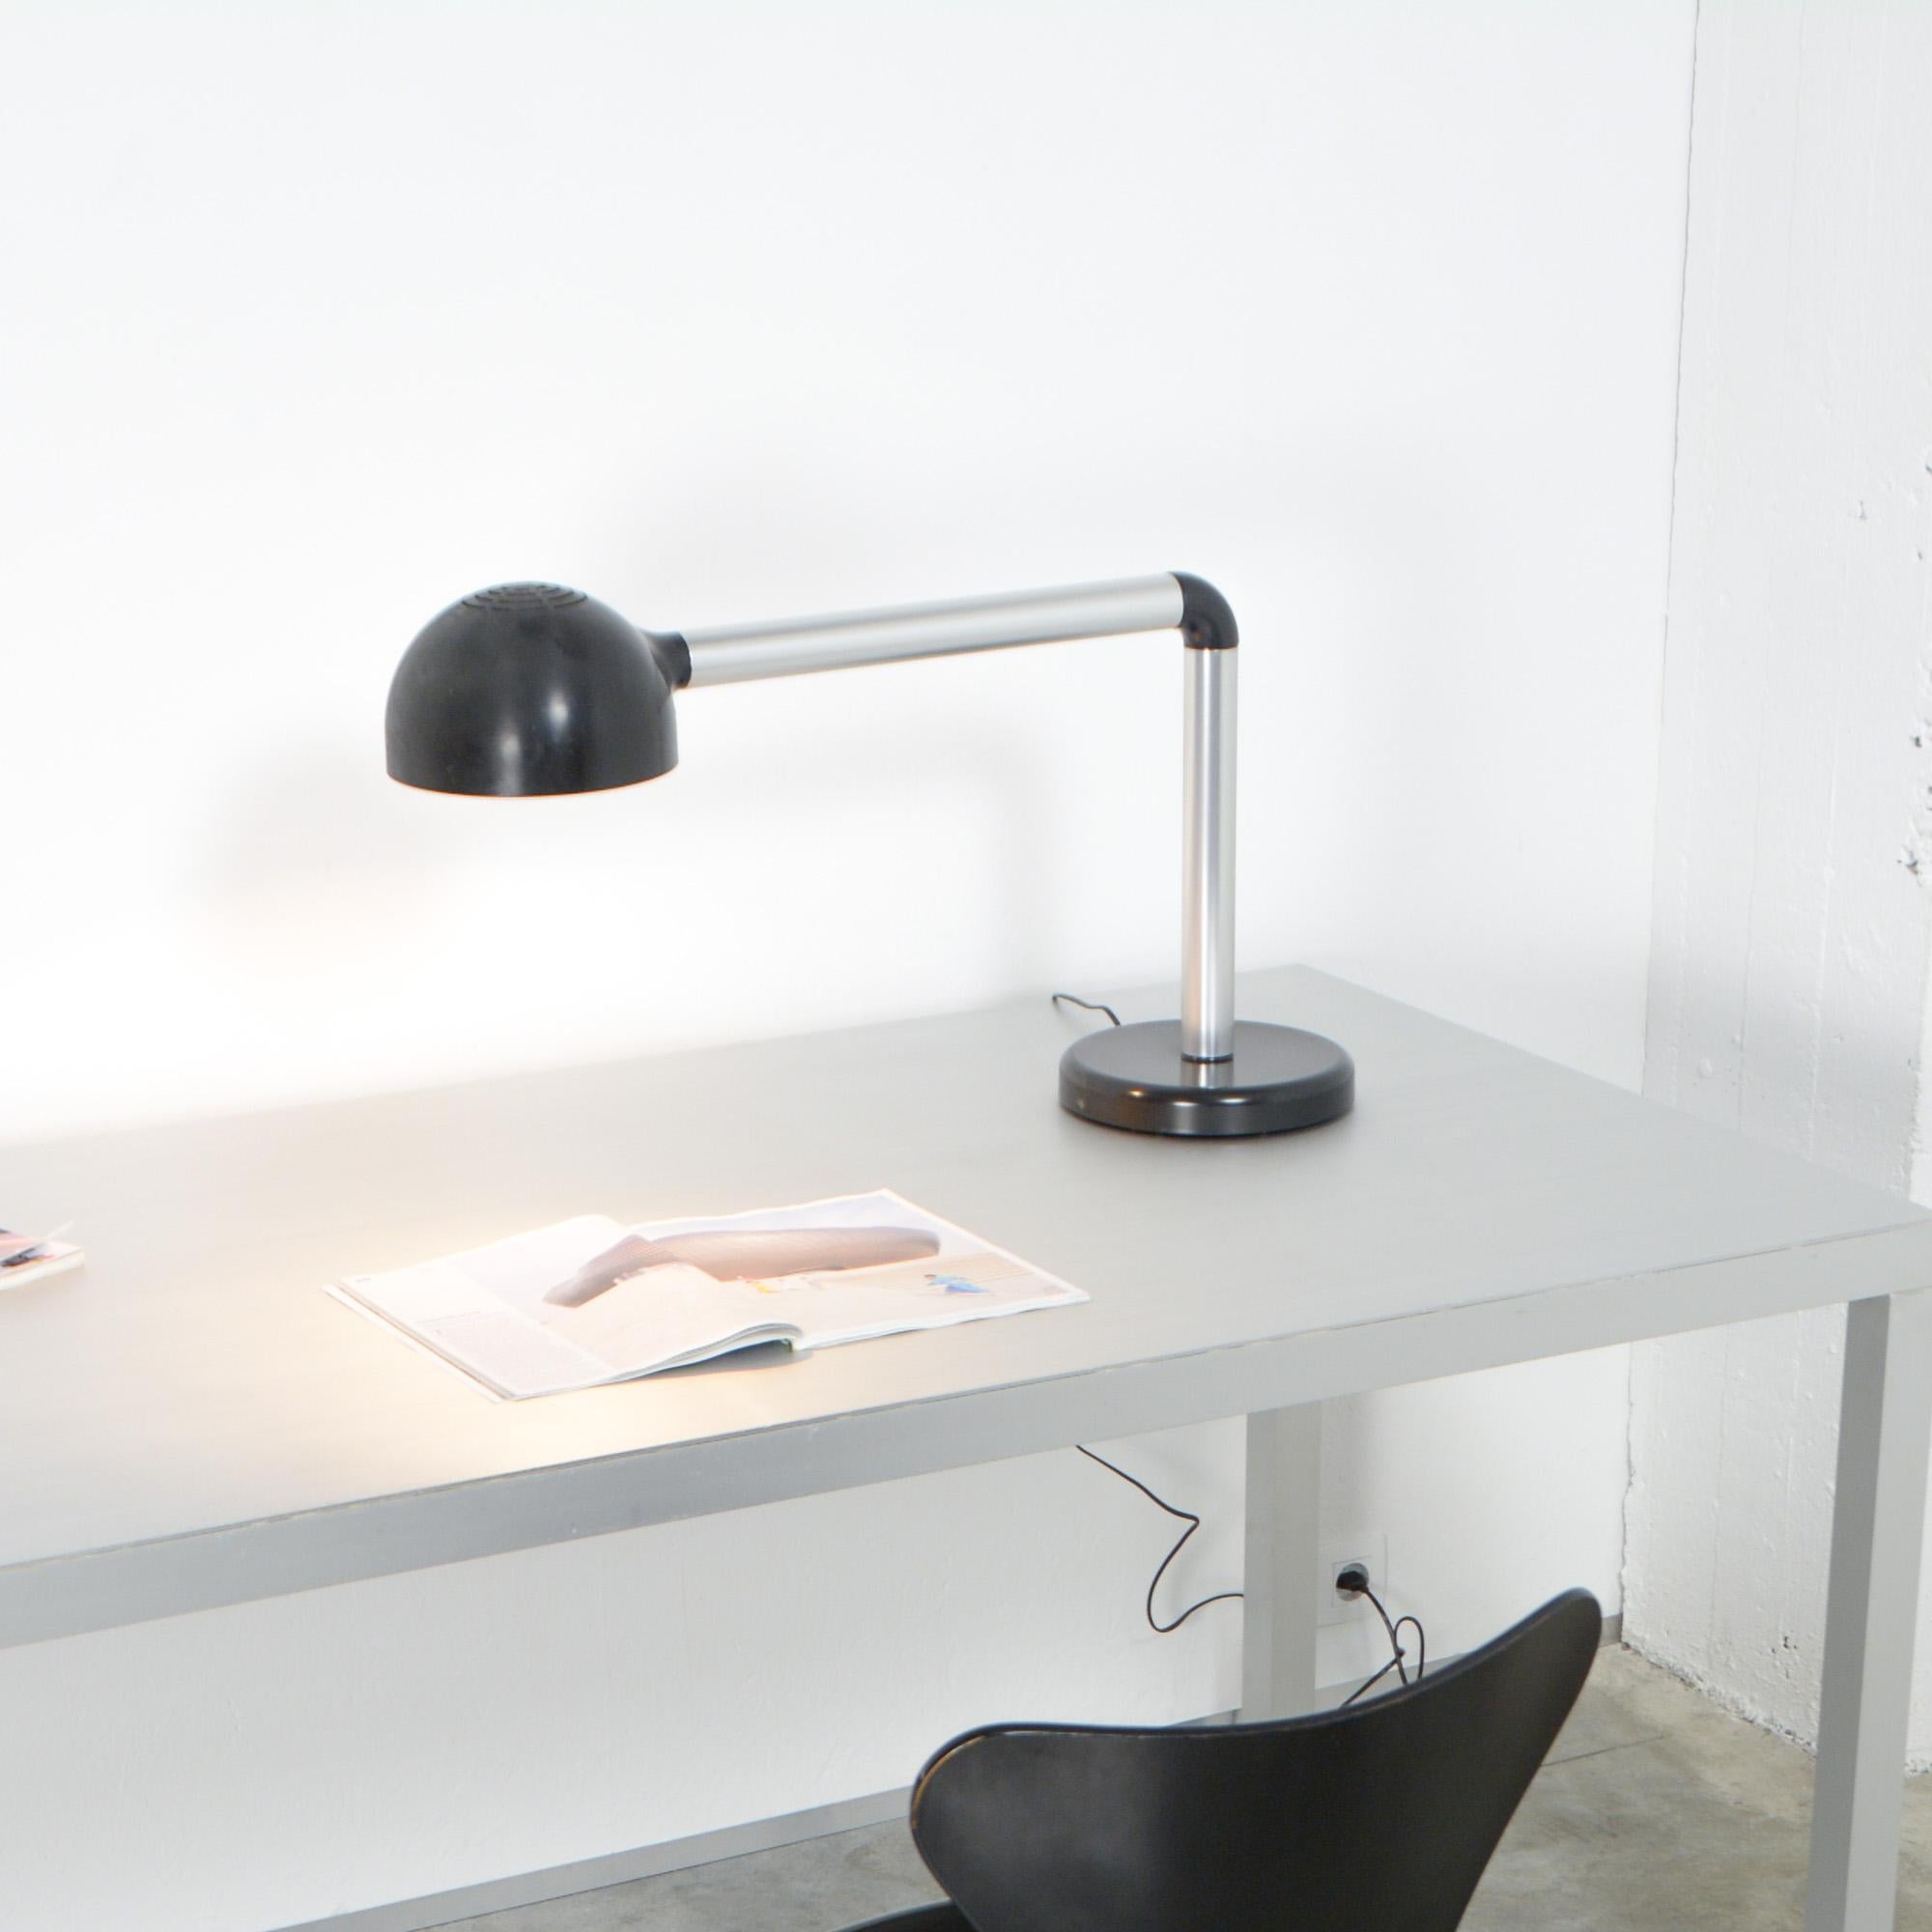 Desk Lamp by Robert Haussmann for Swiss Lamps International 1